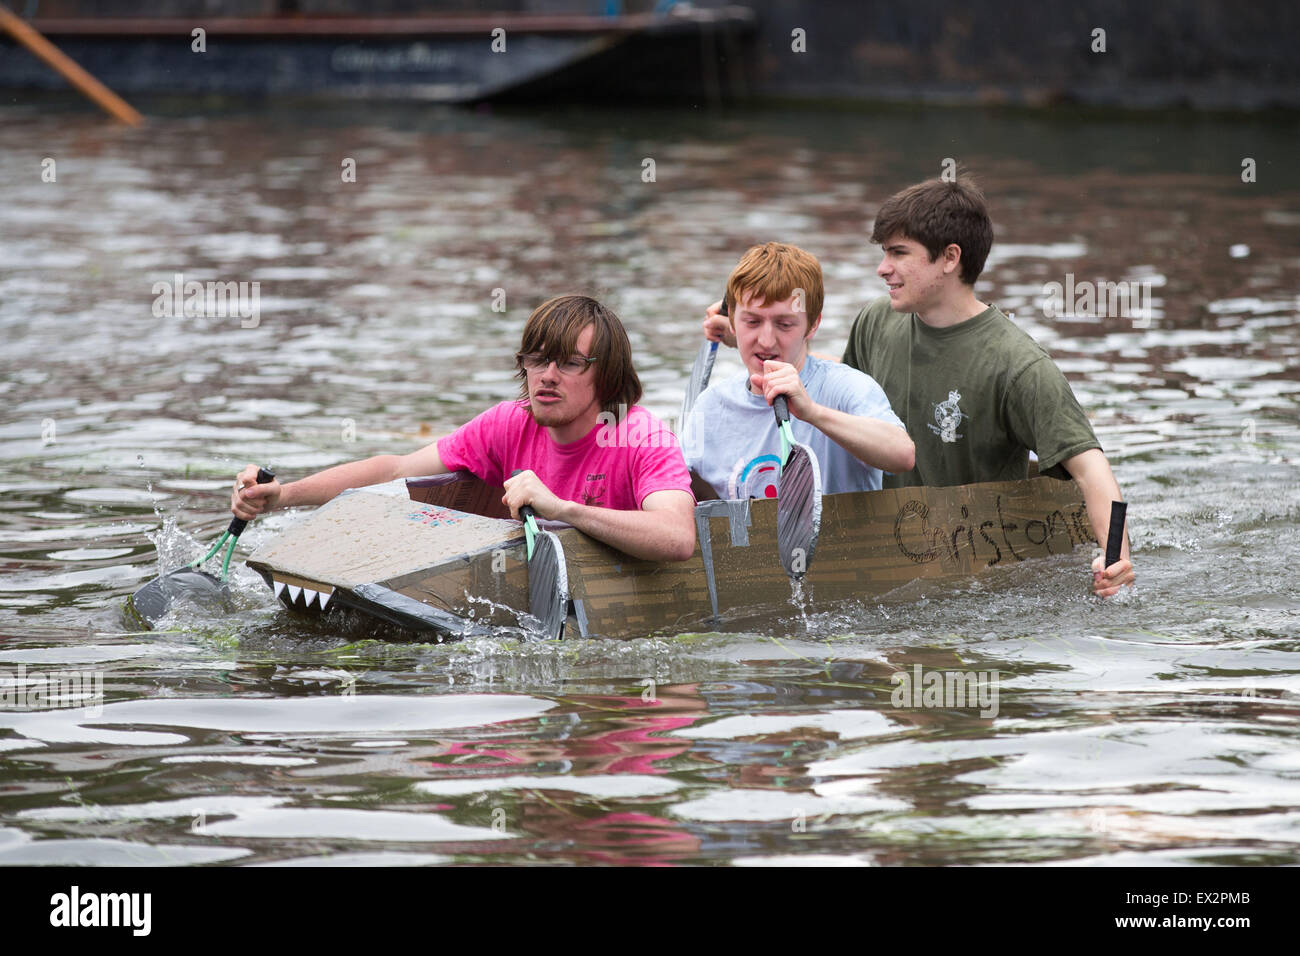 Les étudiants de l'Université de Cambridge sur la rivière Cam prenant part à des courses de bateaux en carton Suicide dimanche pour célébrer la fin des examens. Banque D'Images